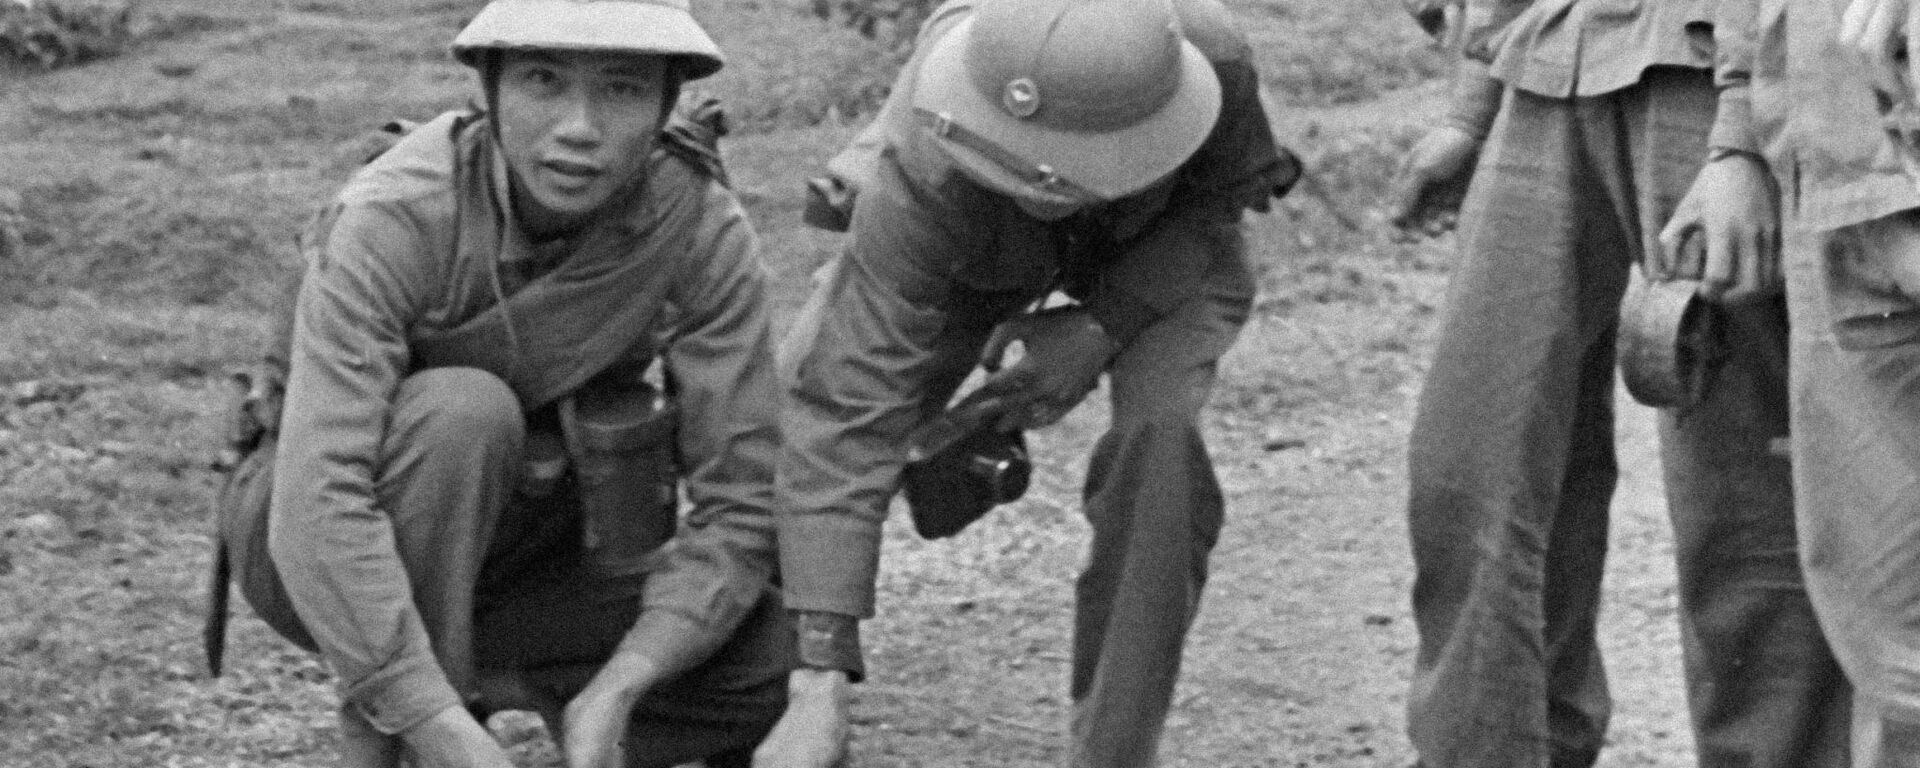 Đặc công Việt Nam gỡ mìn chống tăng. - Sputnik Việt Nam, 1920, 03.12.2021